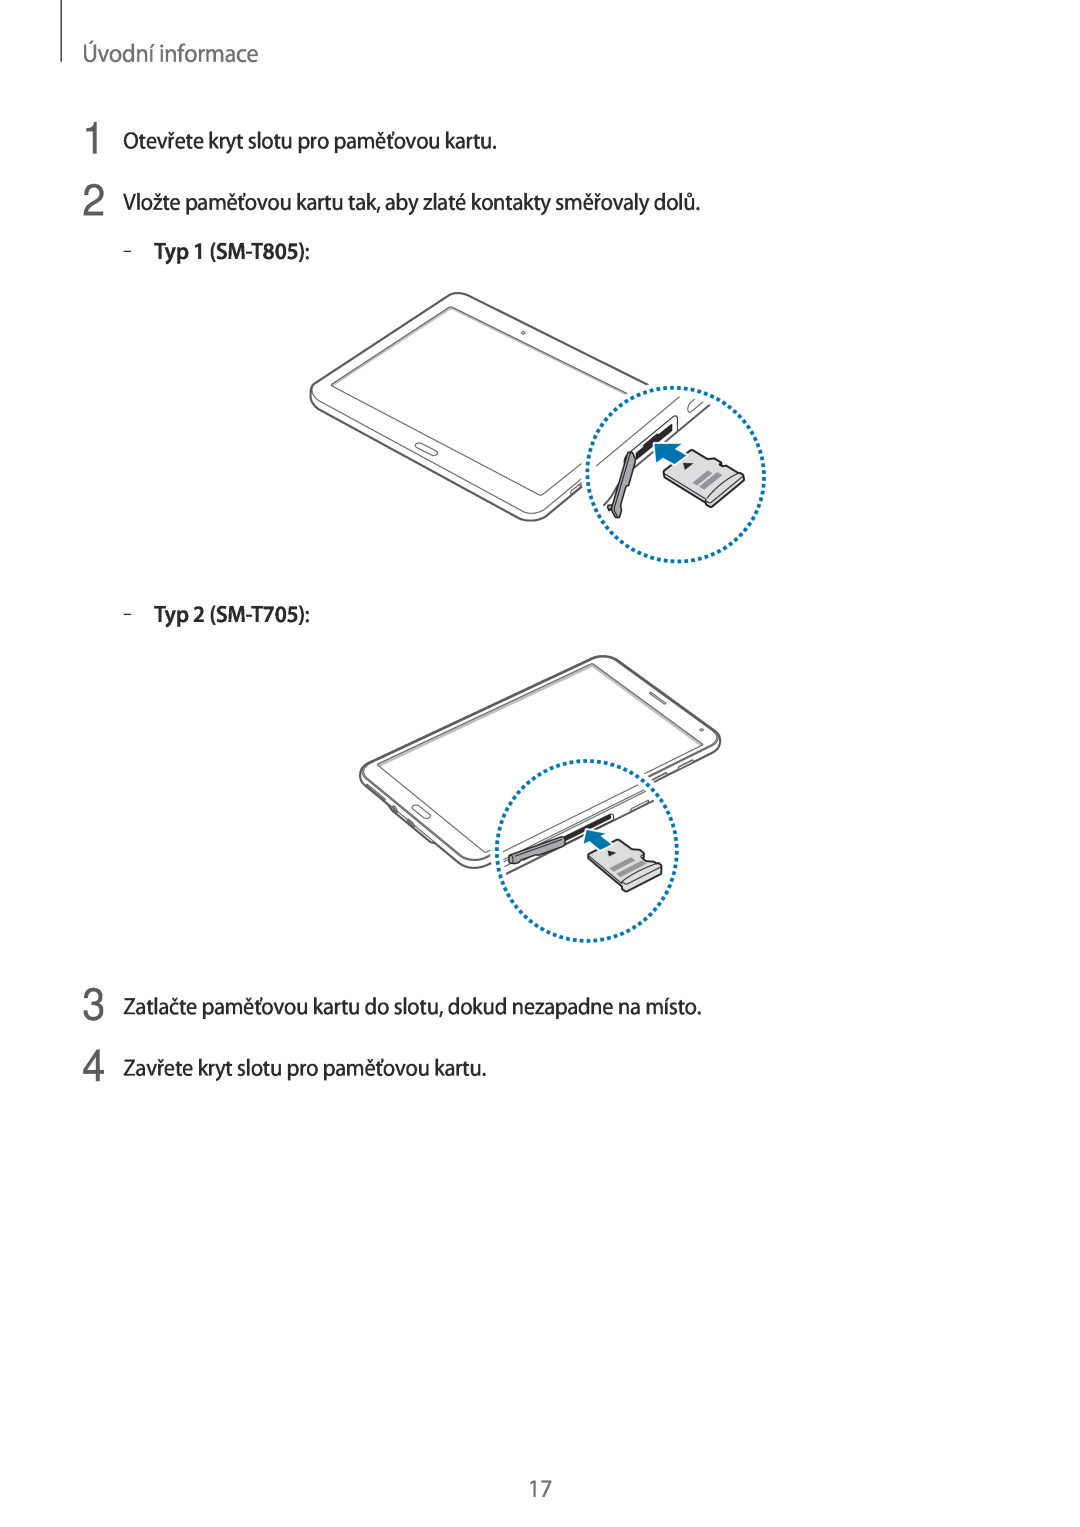 Samsung SM-T705NTSAXEH manual Úvodní informace, Otevřete kryt slotu pro paměťovou kartu, Typ 1 SM-T805, Typ 2 SM-T705 